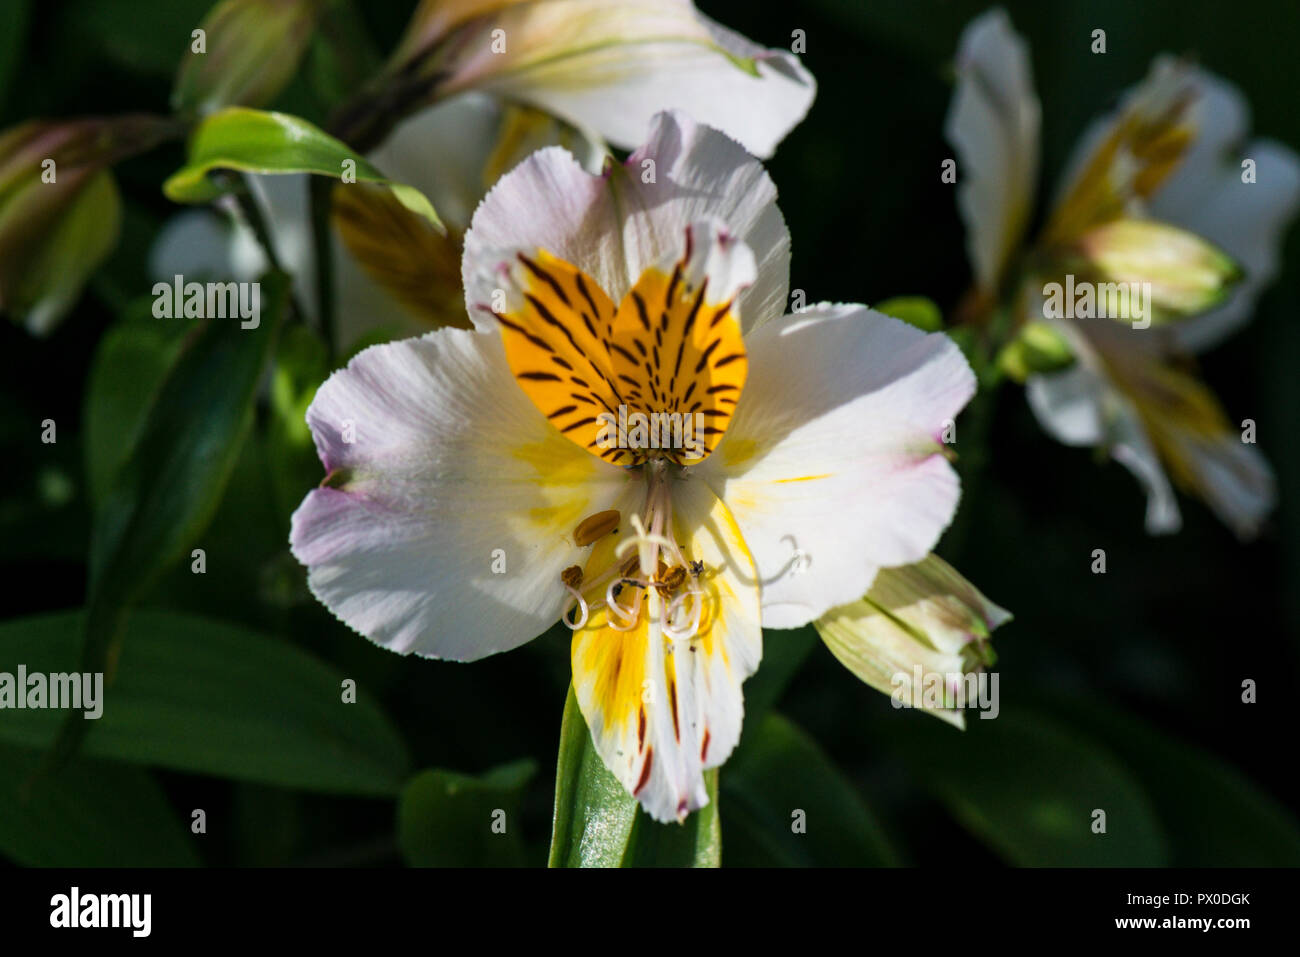 The flower of a Peruvian lily 'Apollo' (Alstroemeria 'Apollo) Stock Photo